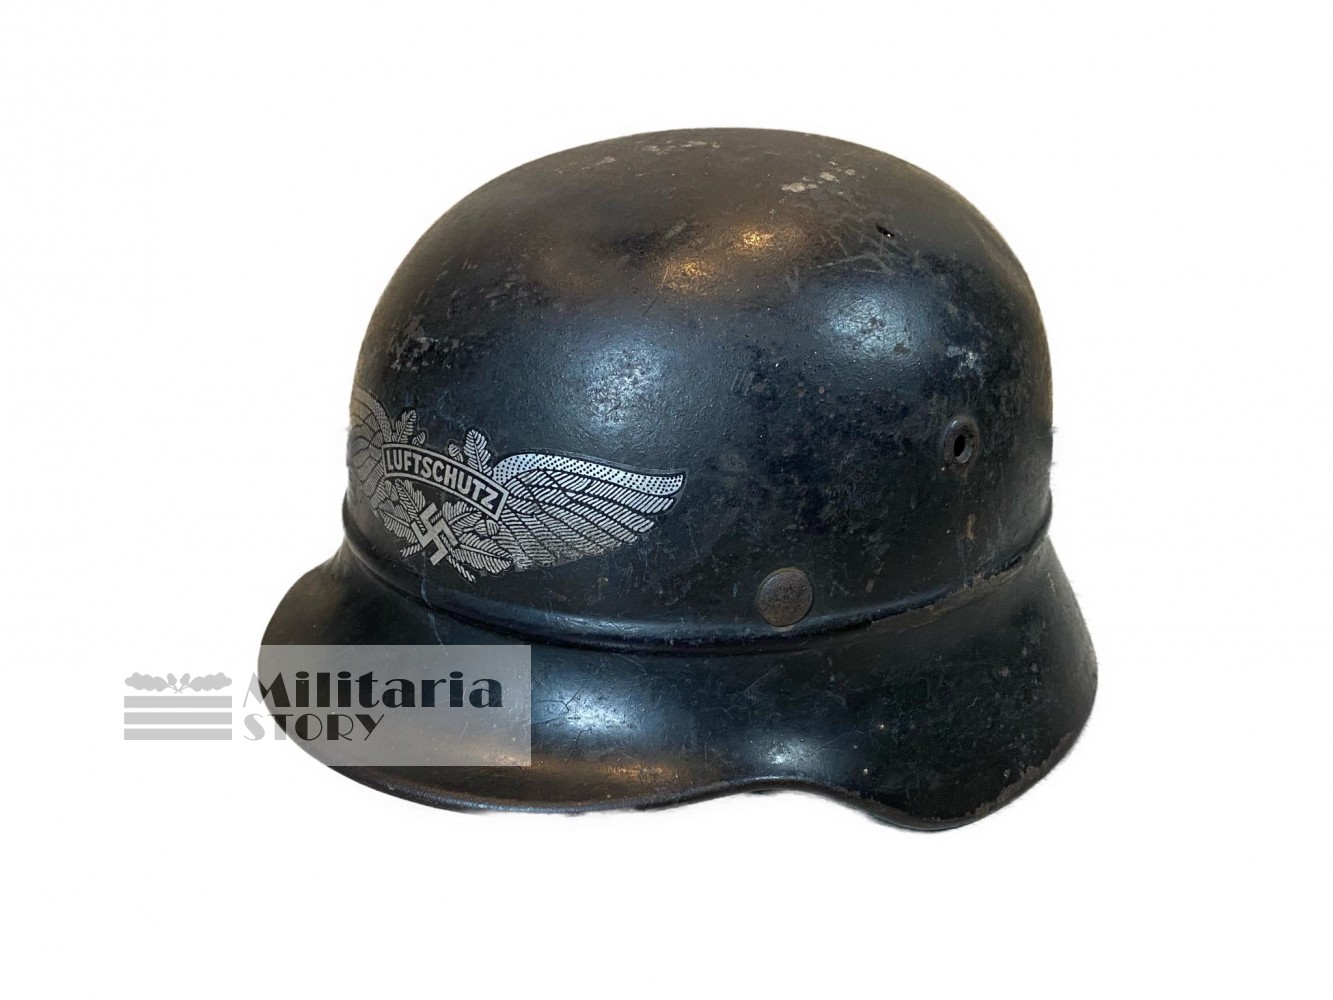 Luftschutz M40 helmet - Luftschutz M40 helmet: Vintage German Headgear